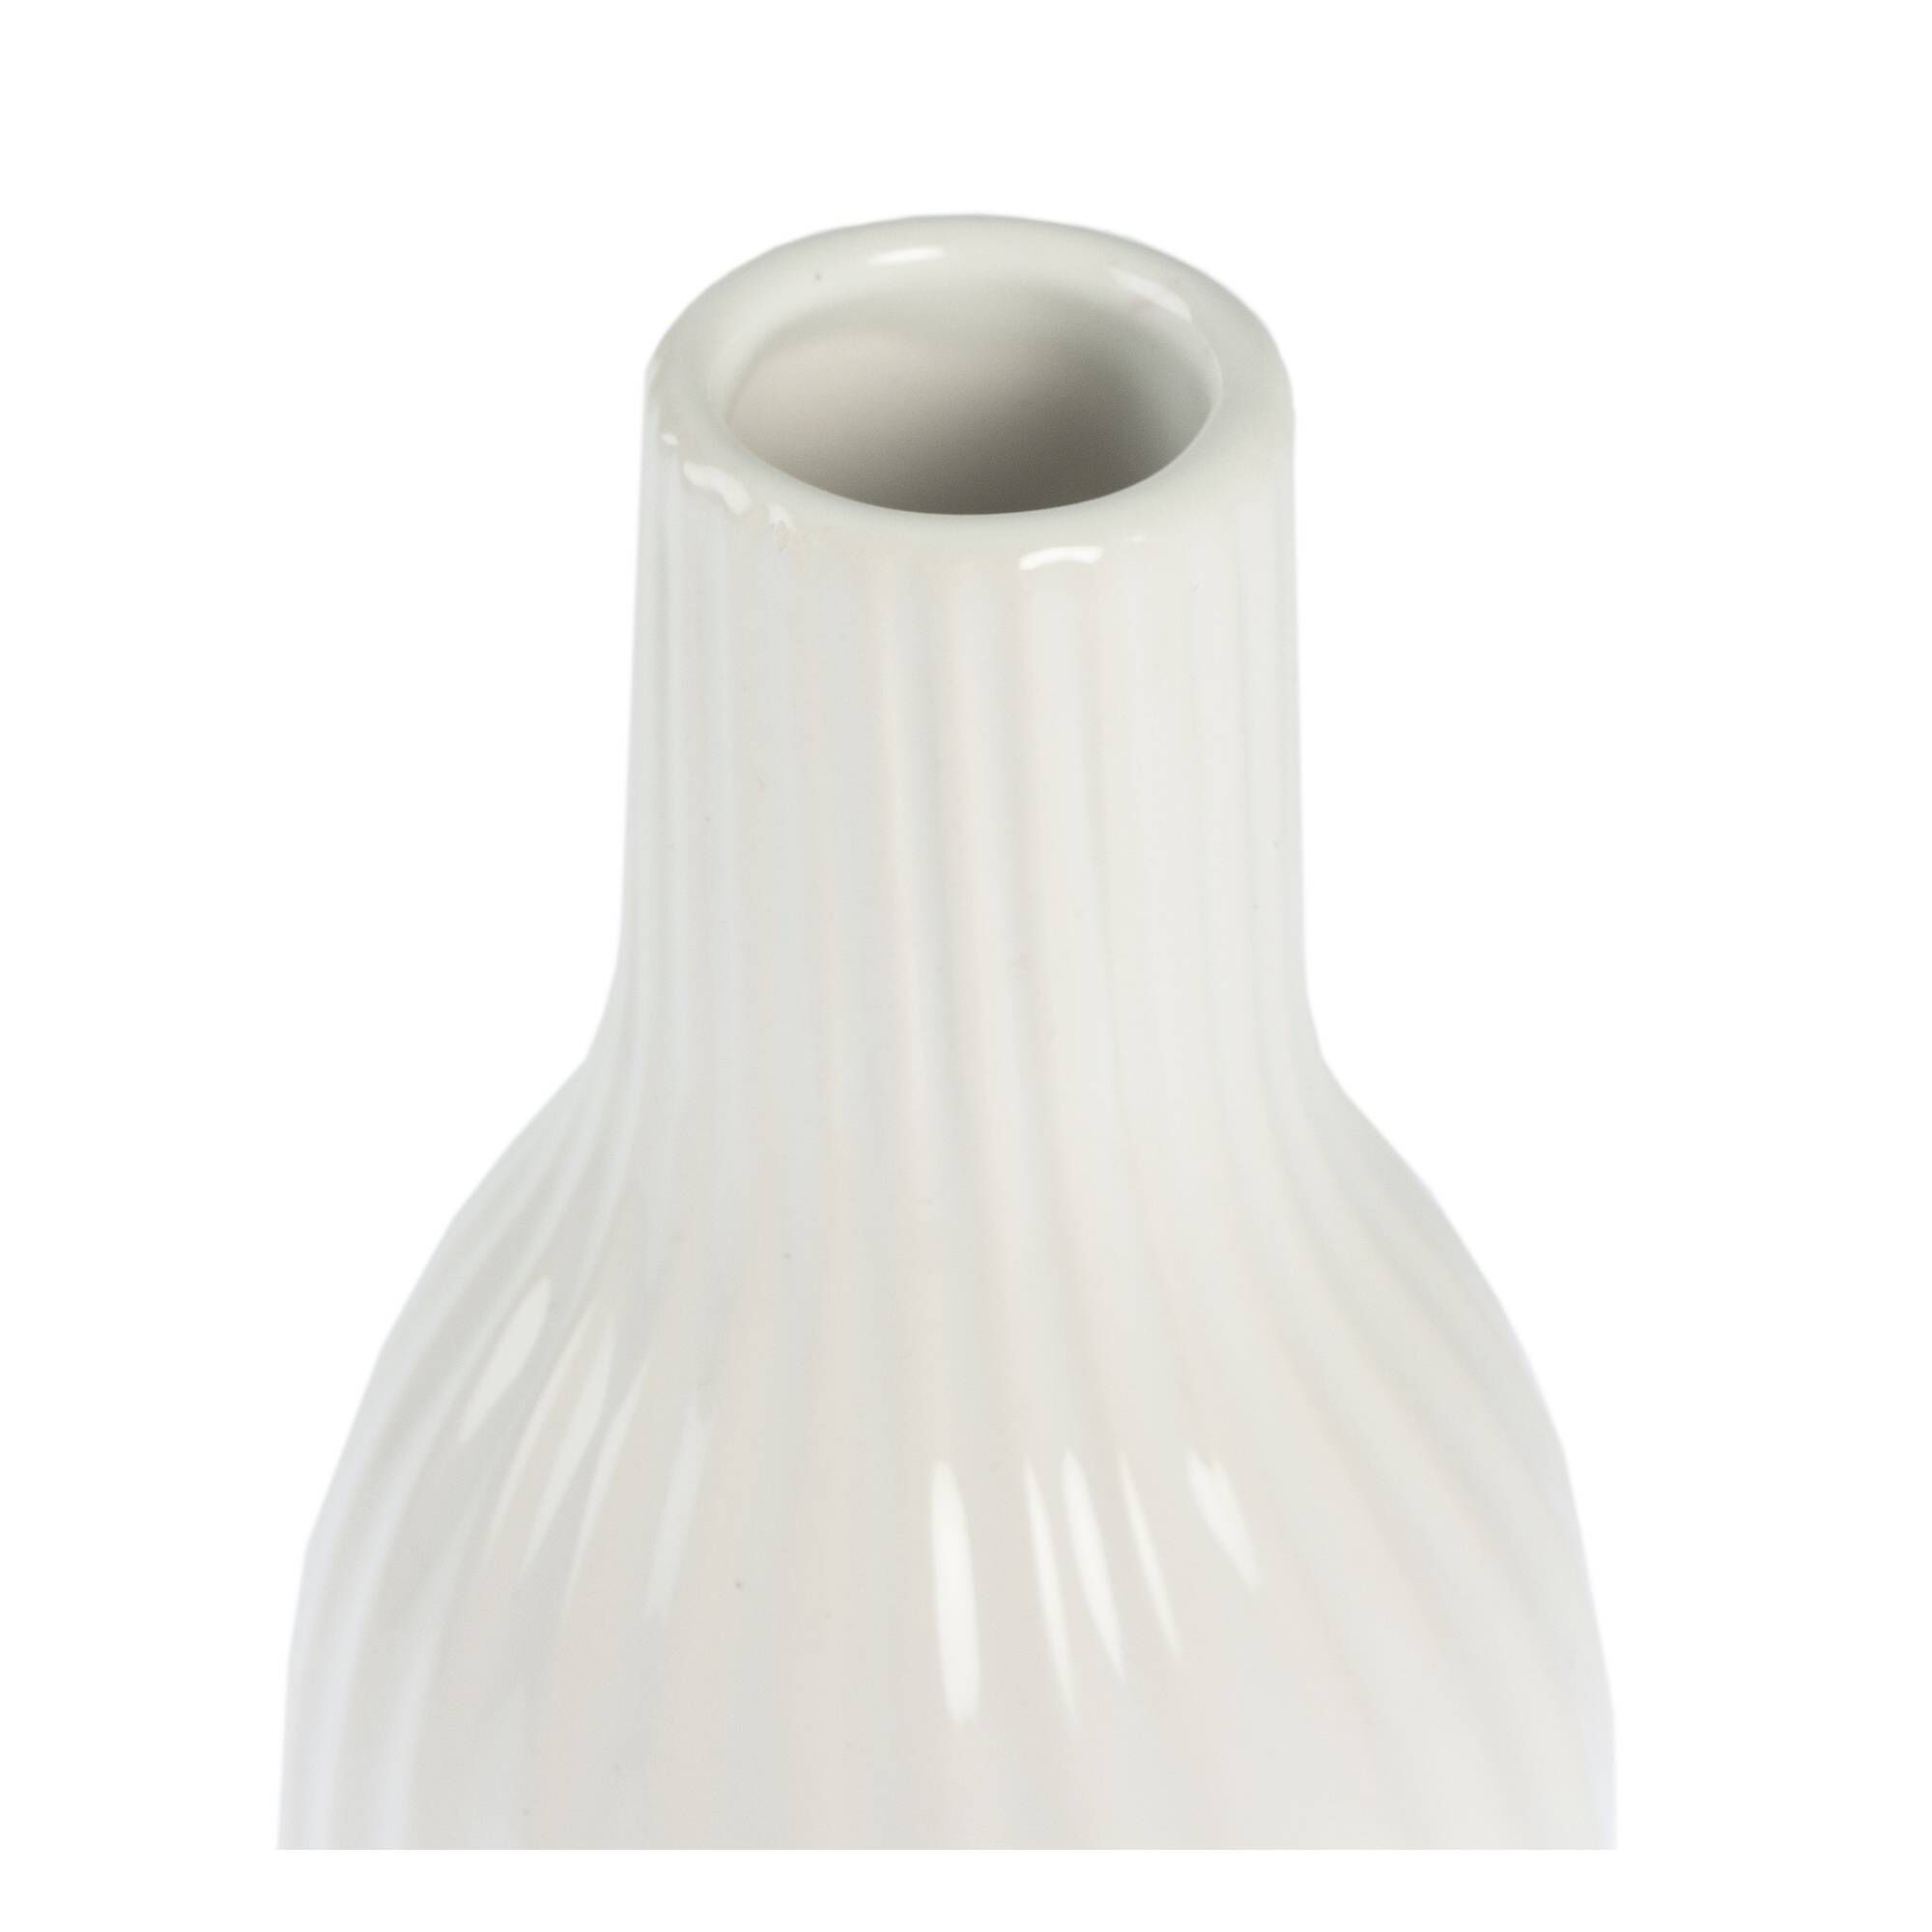 Ceramic Tall Wavy Vase 24cm | Hobbycraft